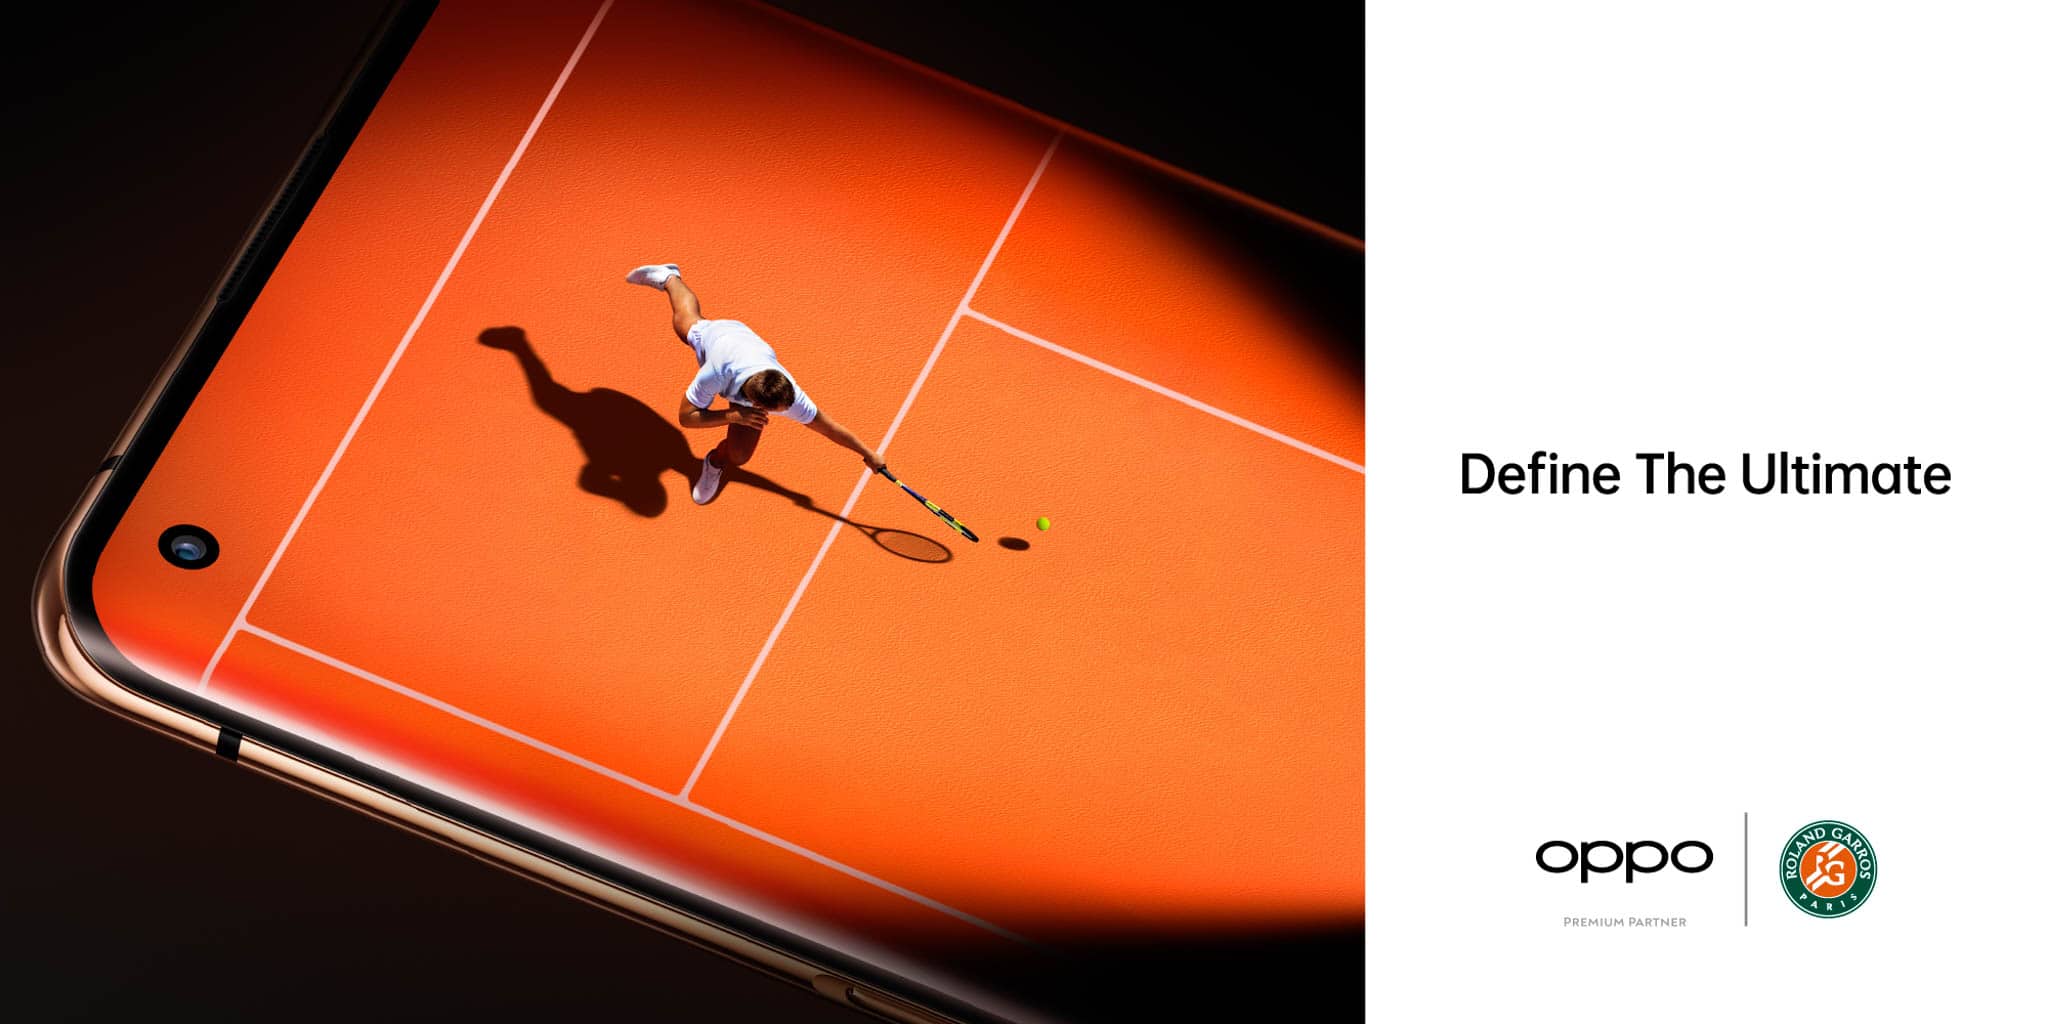 OPPO kỉ niệm năm thứ 2 là Đối tác Smartphone chính thức tại Roland-Garros